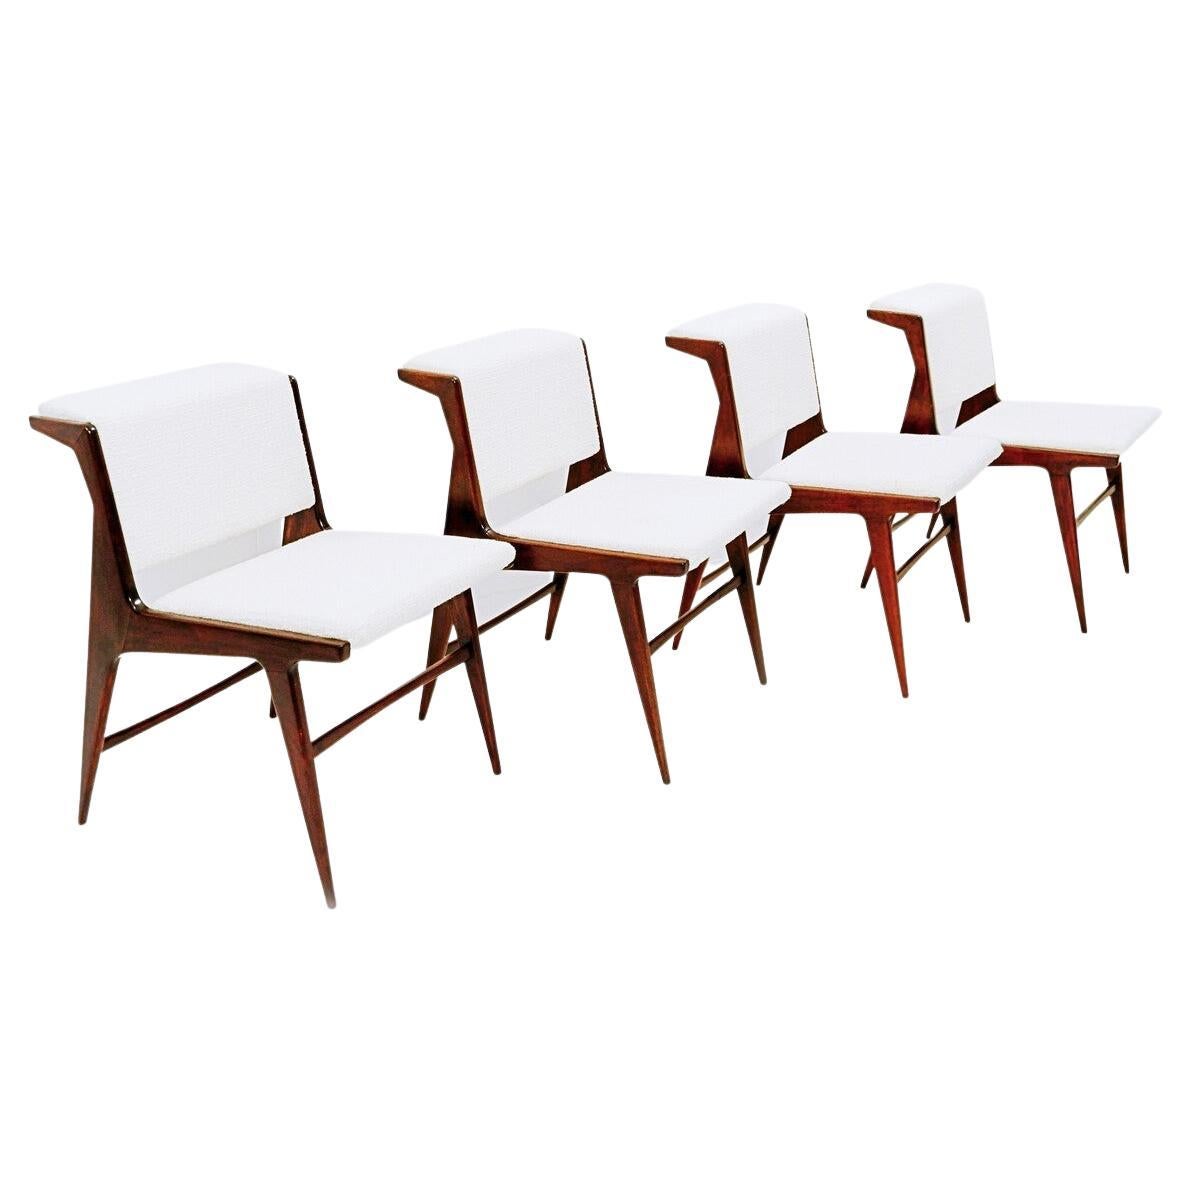 Ensemble de 4 chaises italiennes modernes du milieu du siècle dernier, bois et tissu blanc, années 1960